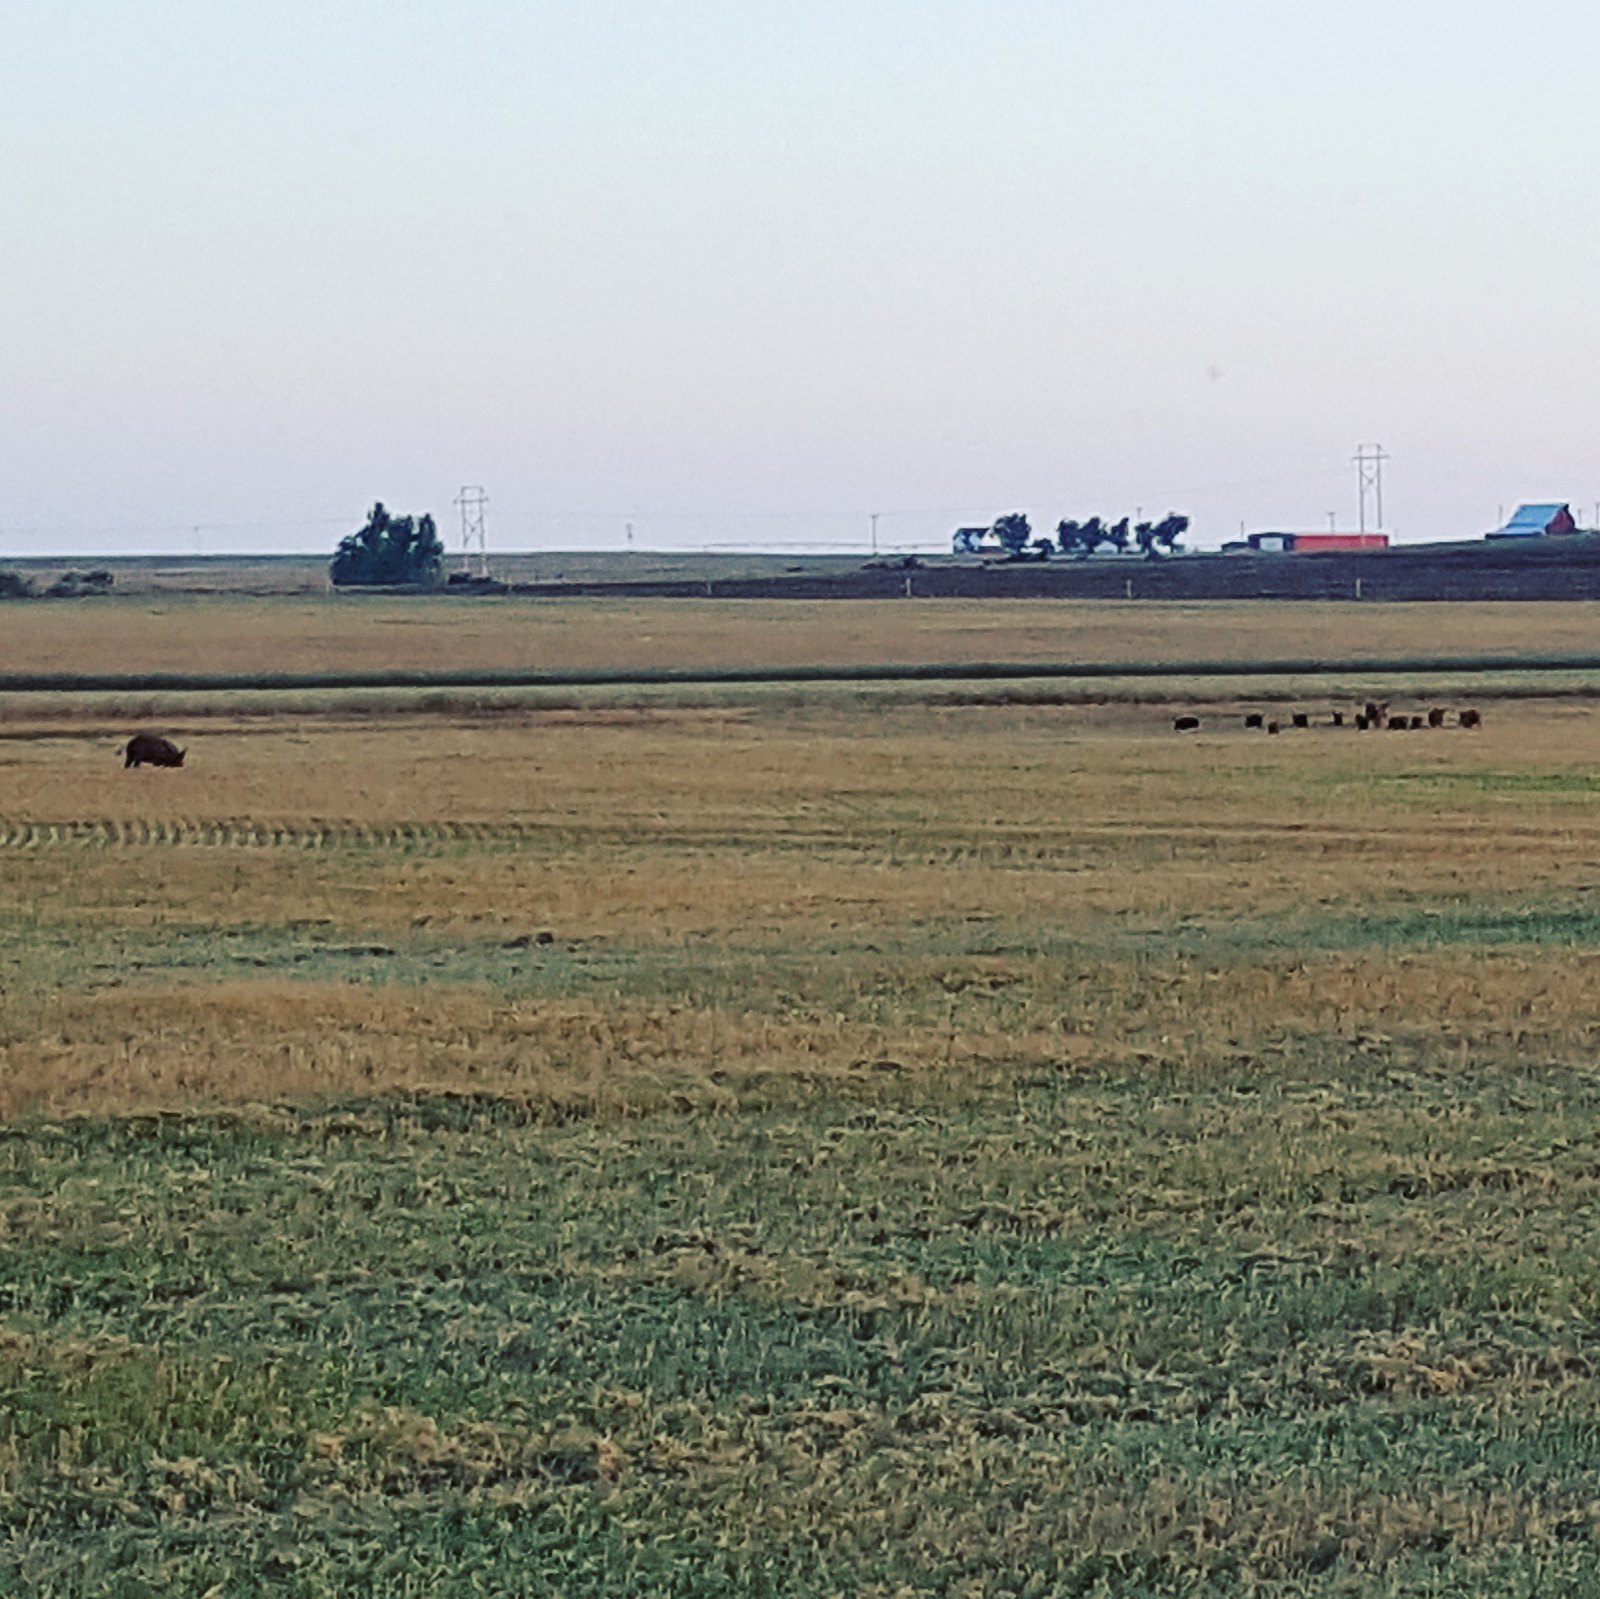 Schemper 2017 - Oklahoma Wheat Harvest